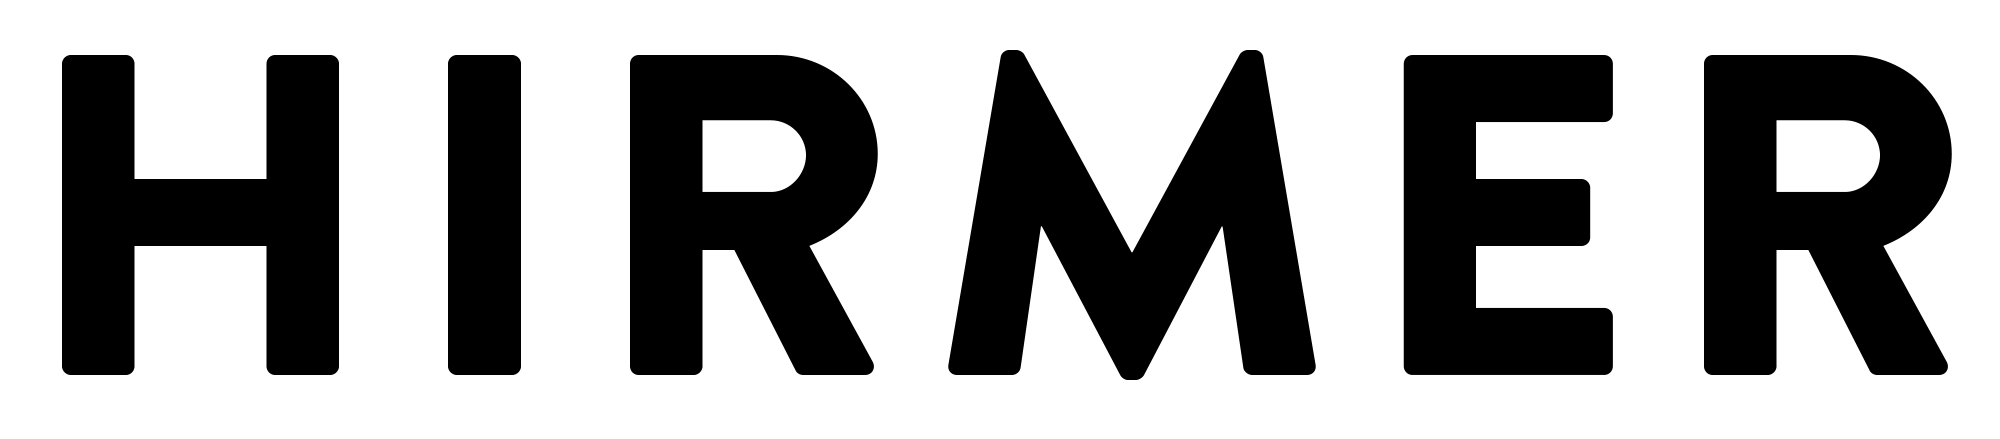 Hirmer_Verlag_Logo